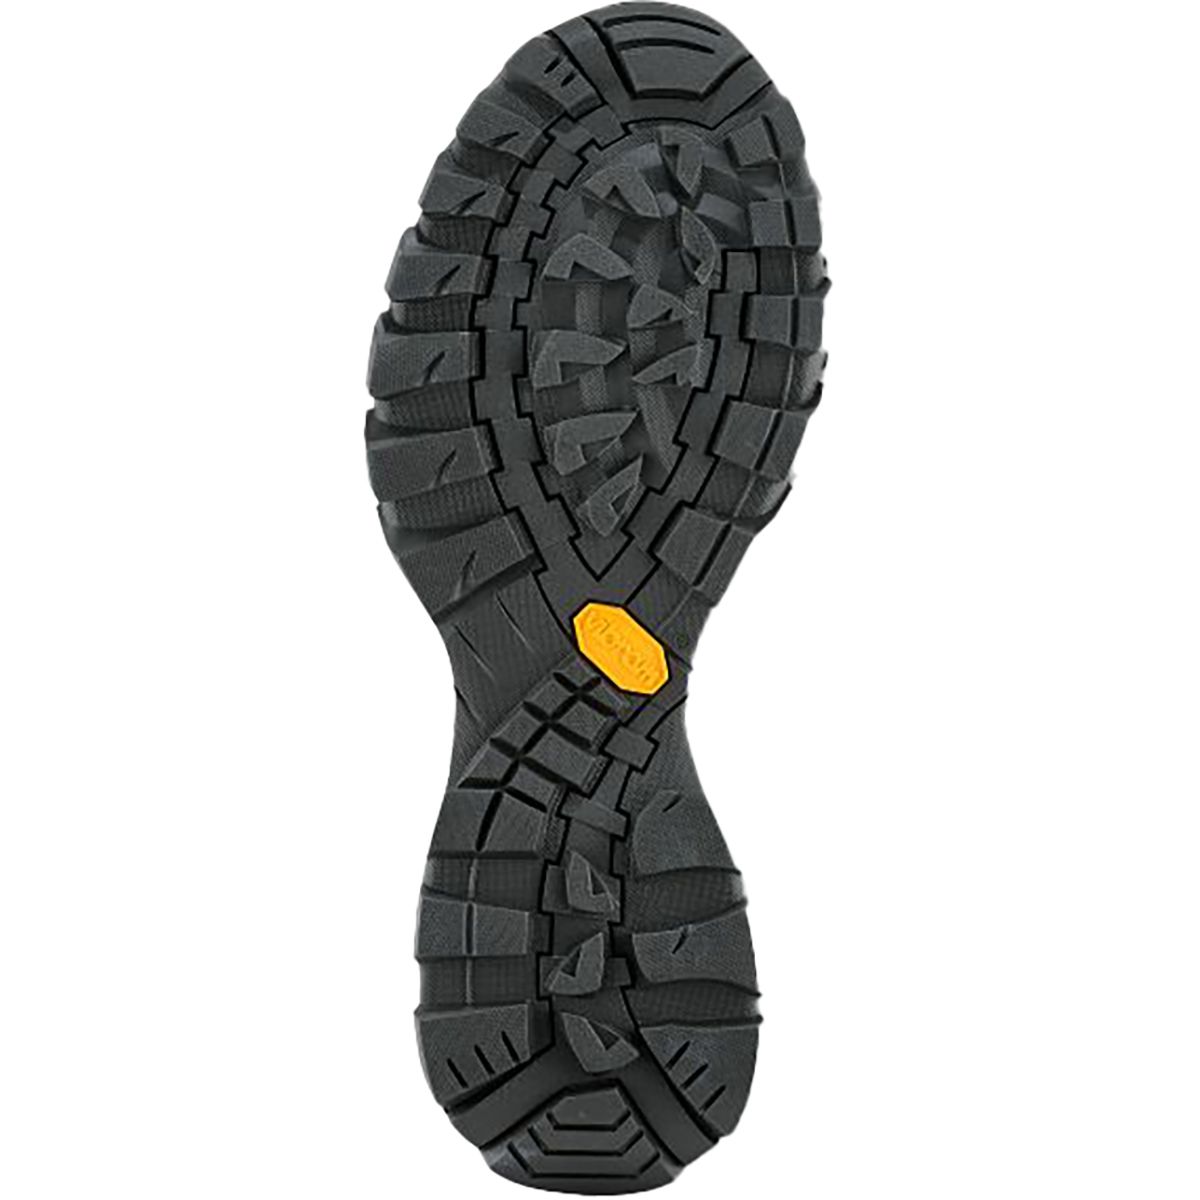 Vasque Talus XT GTX Hiking Boot - Women's | Backcountry.com